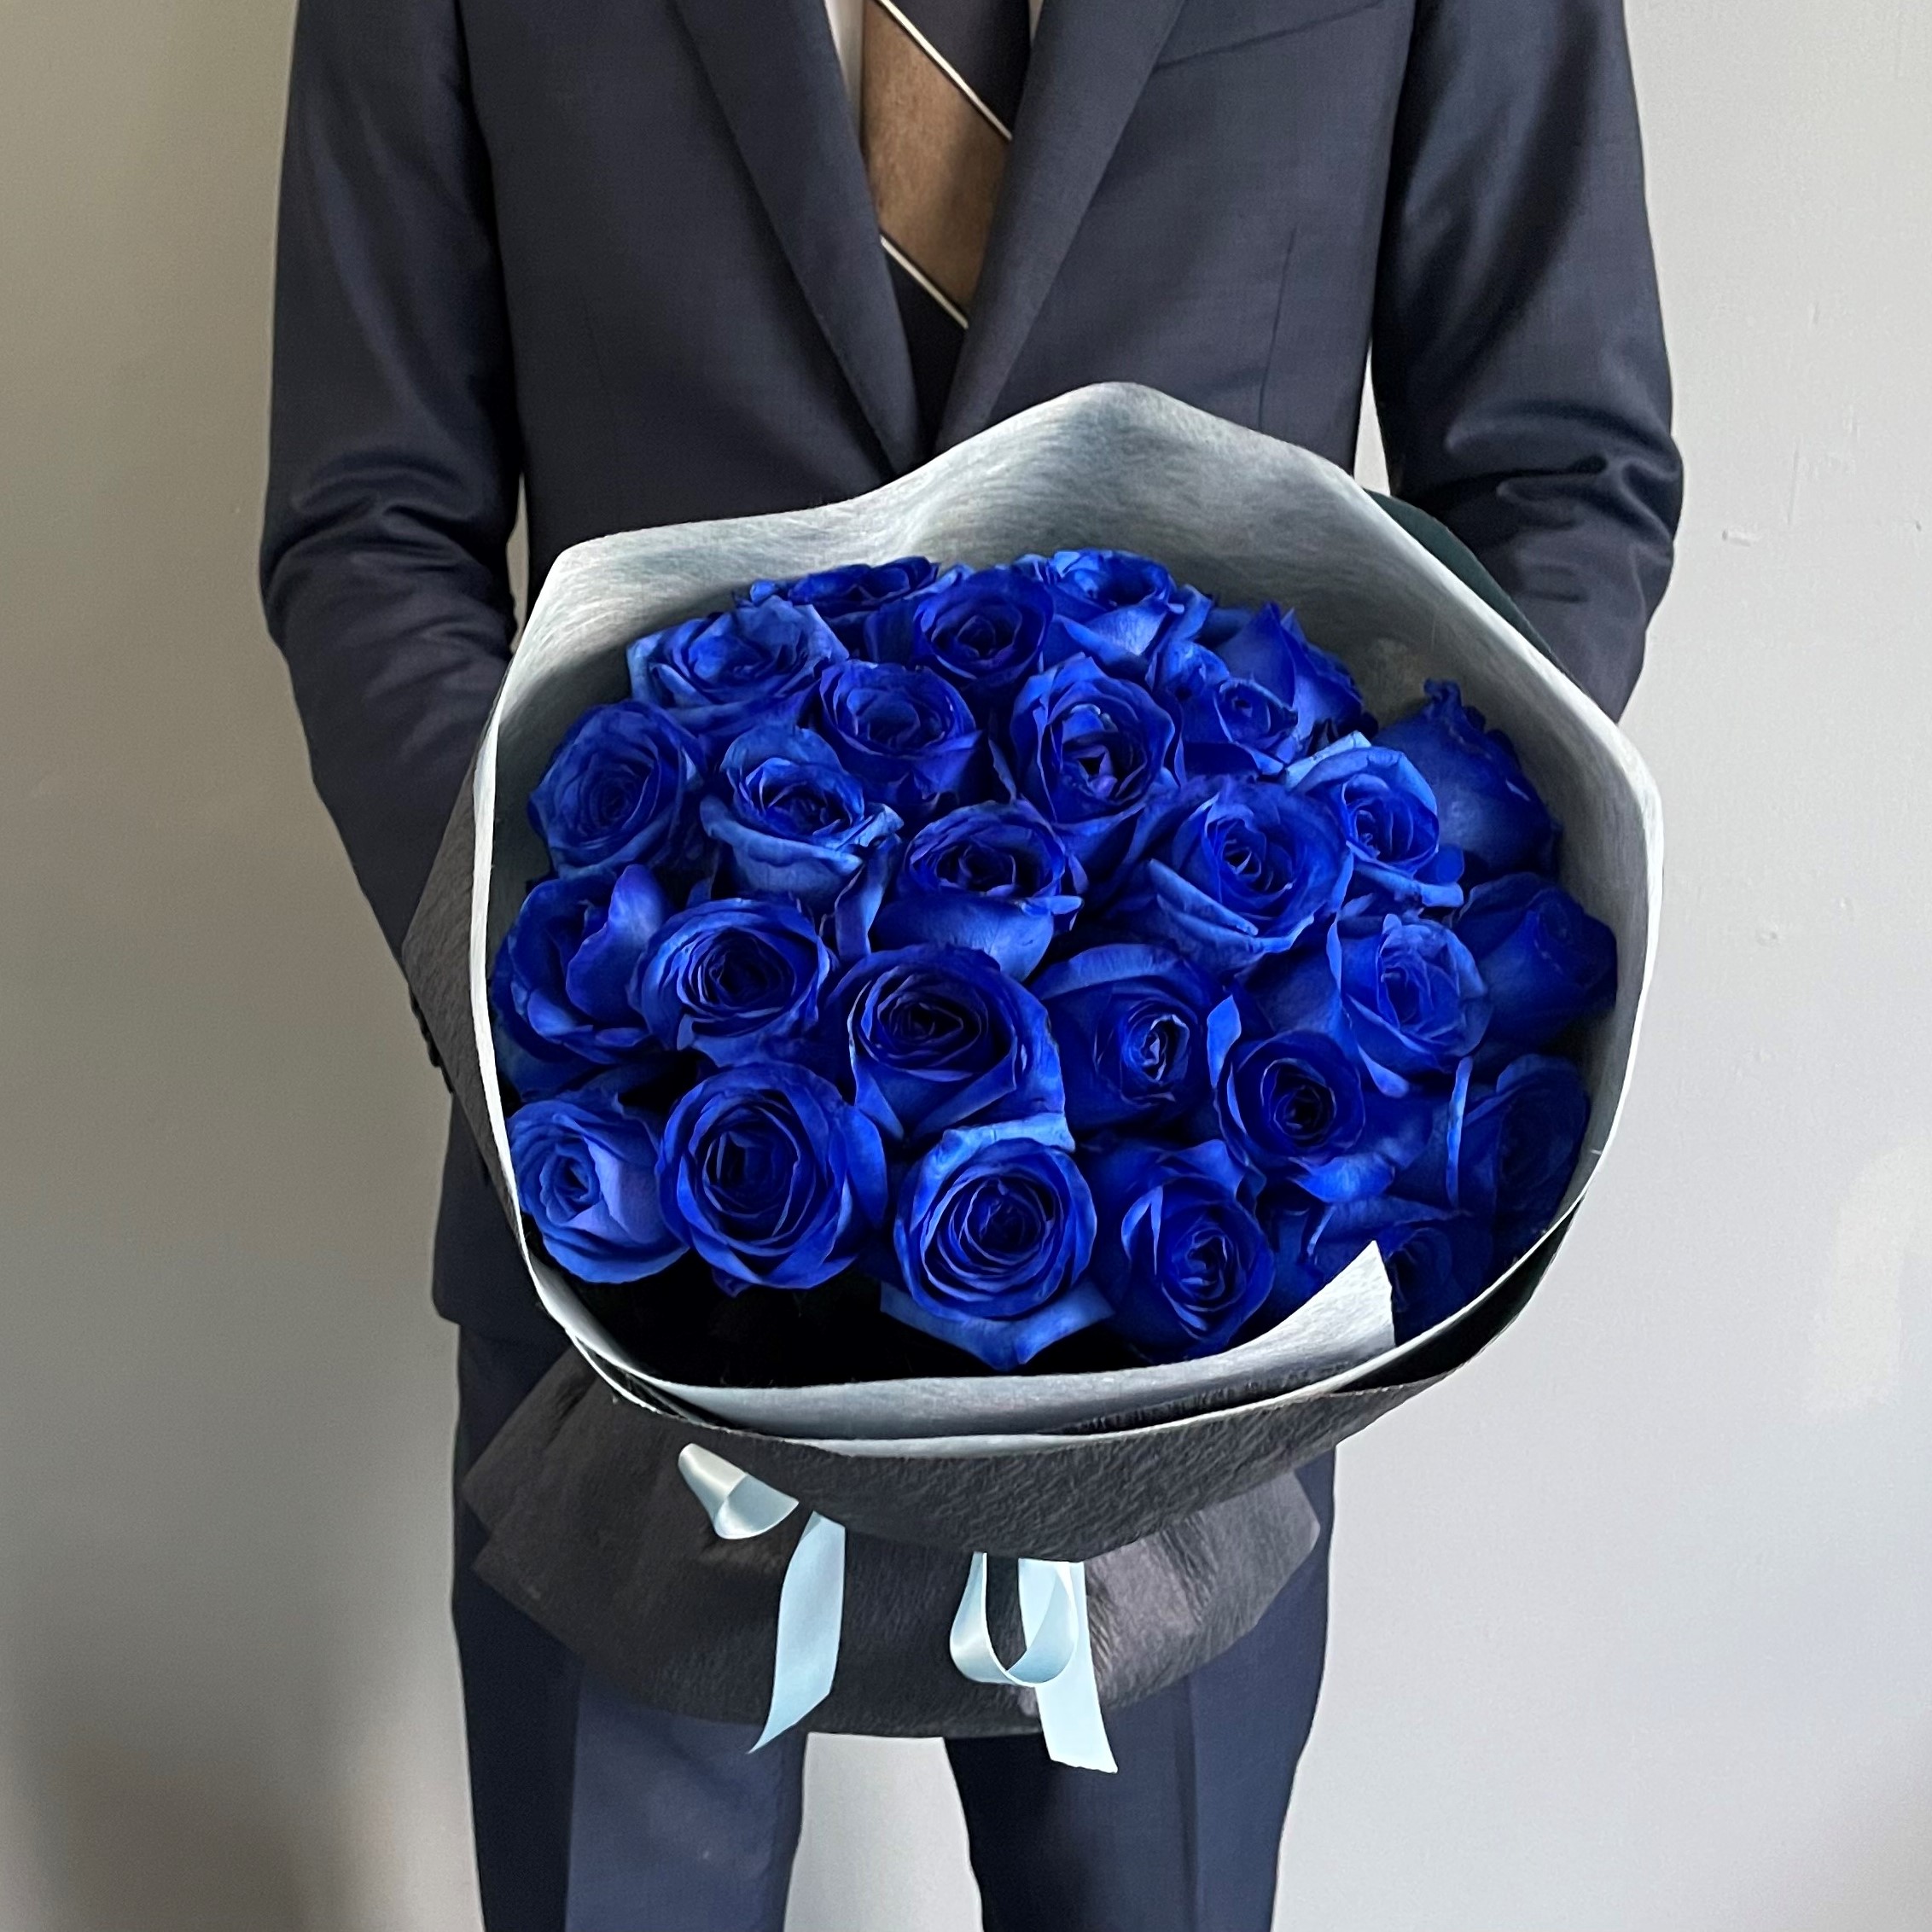 営業 ブルーローズ 青い薔薇 花束 30本のブルーローズブーケ Fucoa Cl